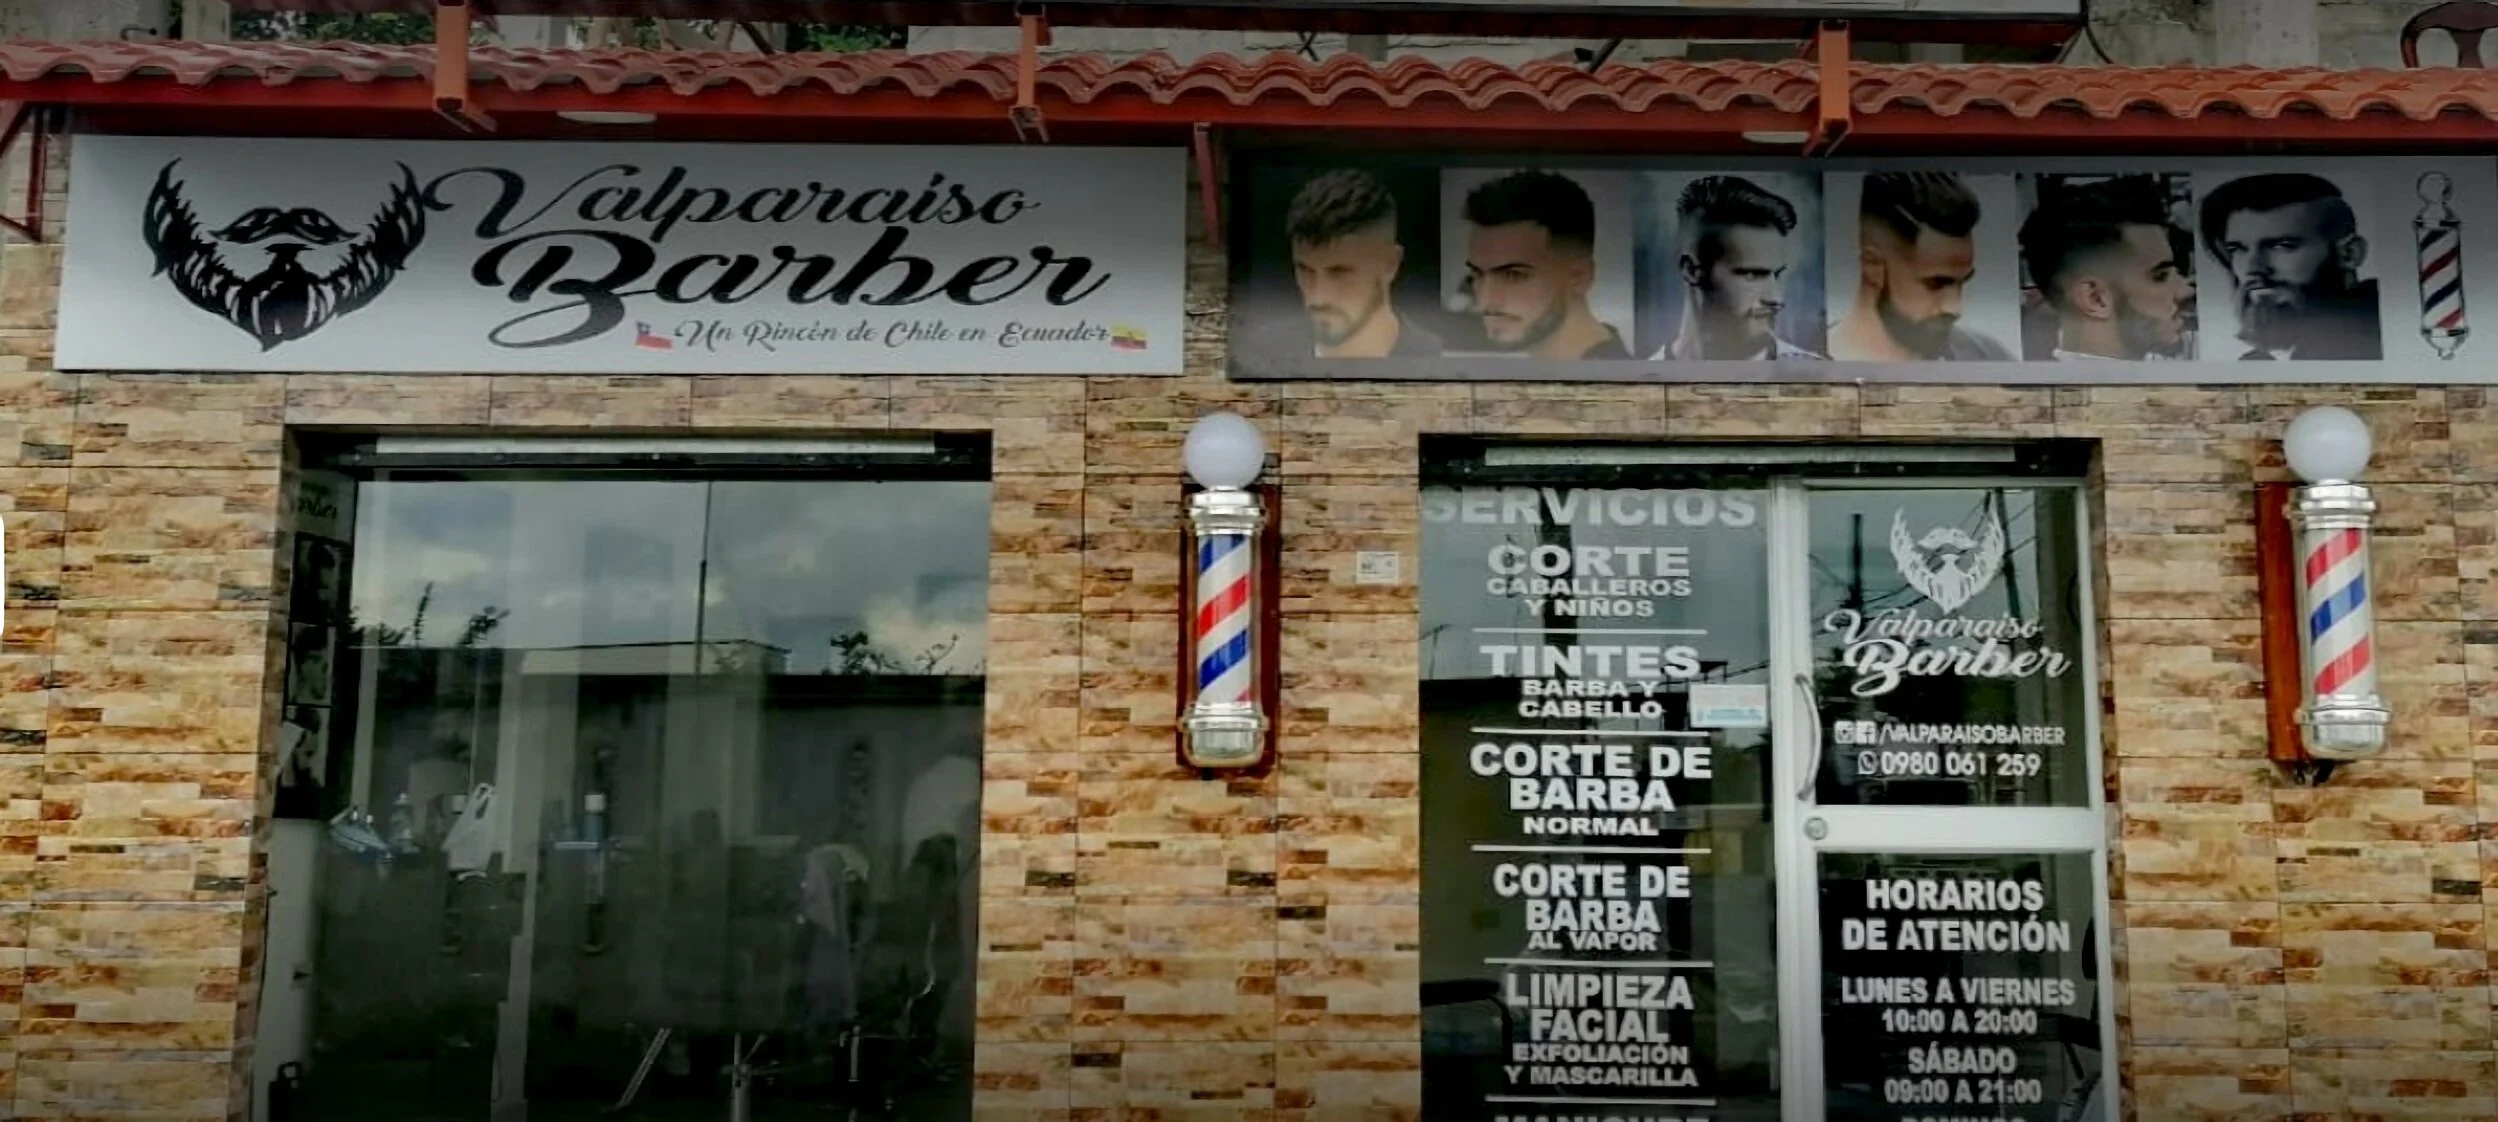 Barbería-valparaiso-barber-11653